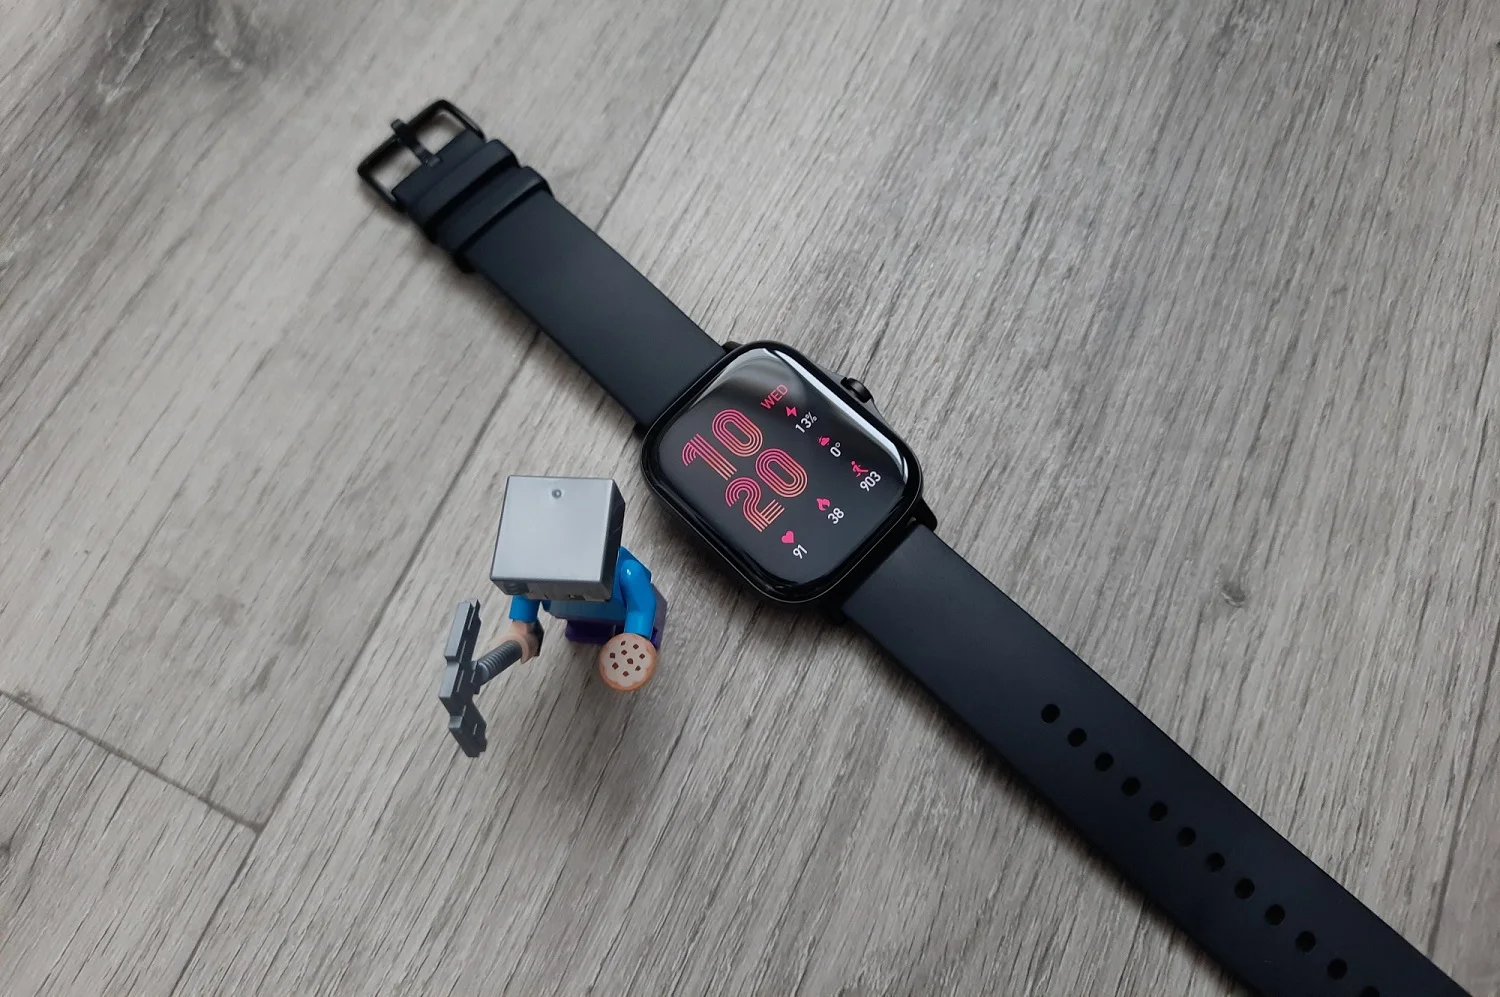 В конце 2020 года Amazfit представила в России премиум-часы GTS 2. В новой модели упор сделали на новых функциях и относительной независимости от смартфона, а дизайн с реверансом в сторону Apple Watch оставил, как и у первой версии. Некоторые полезные доработки есть и снаружи, но обо всем и по порядку читайте в материале ниже.